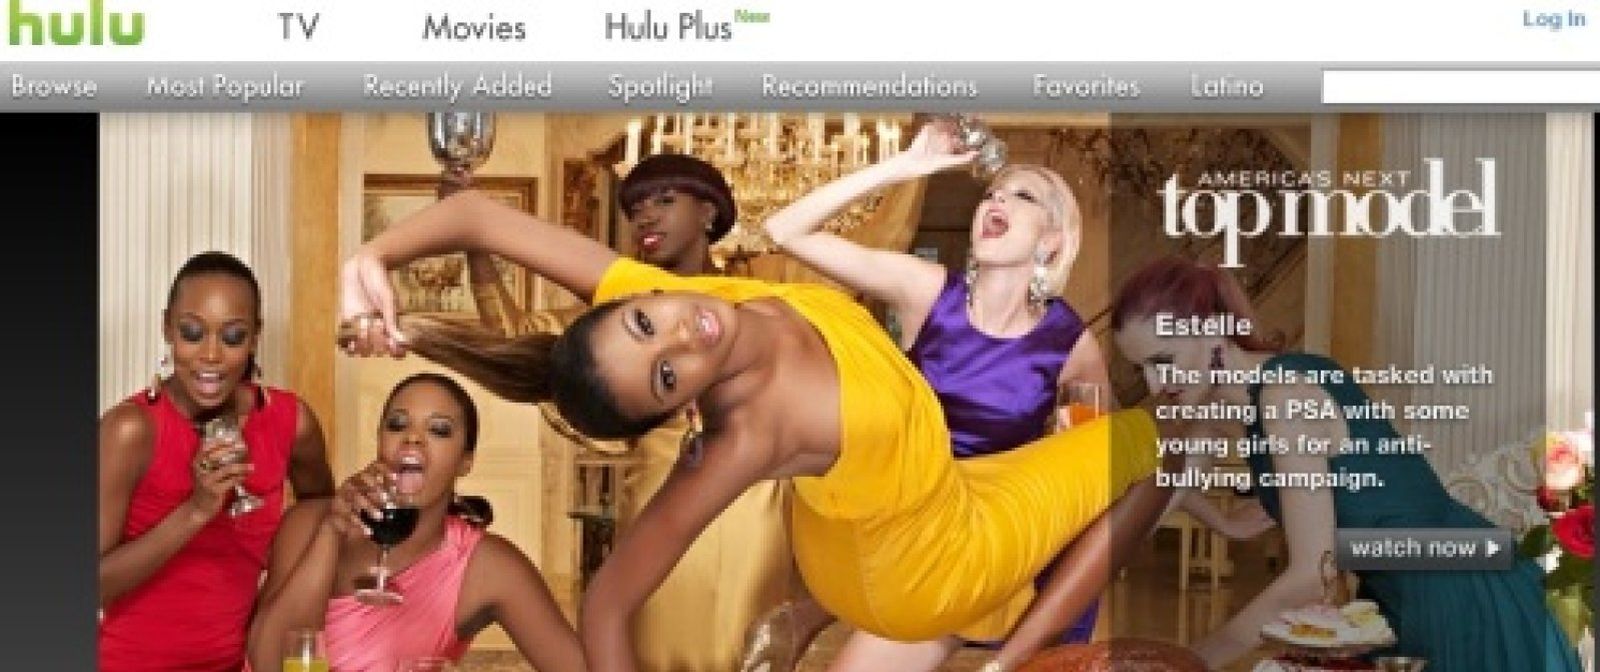 Foto: Walt Disney y News Corp valoran Hulu.com en 2.000 millones de dólares